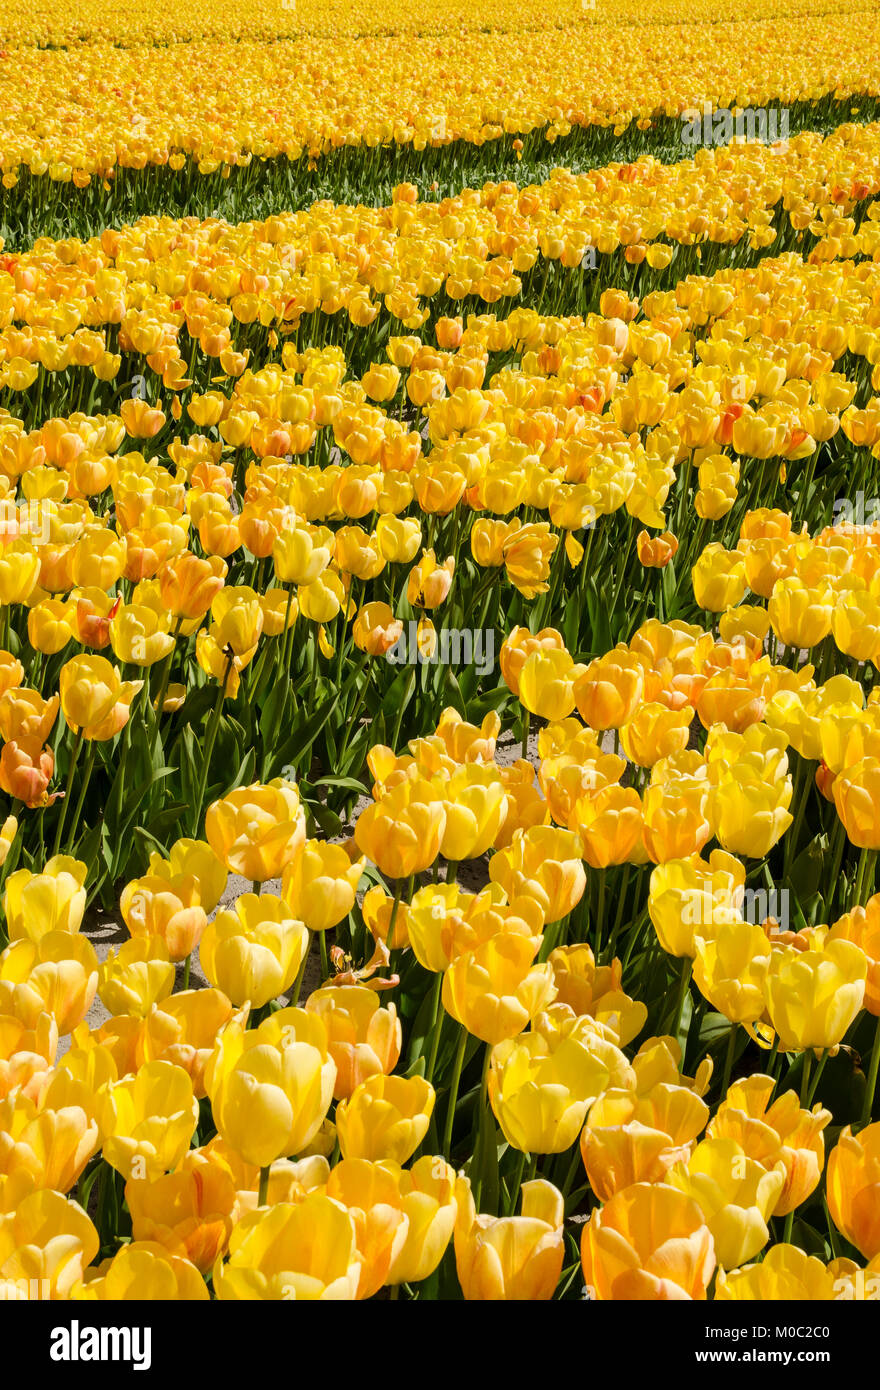 Tulpenfelder bei Lisse, Niederlande Stock Photo